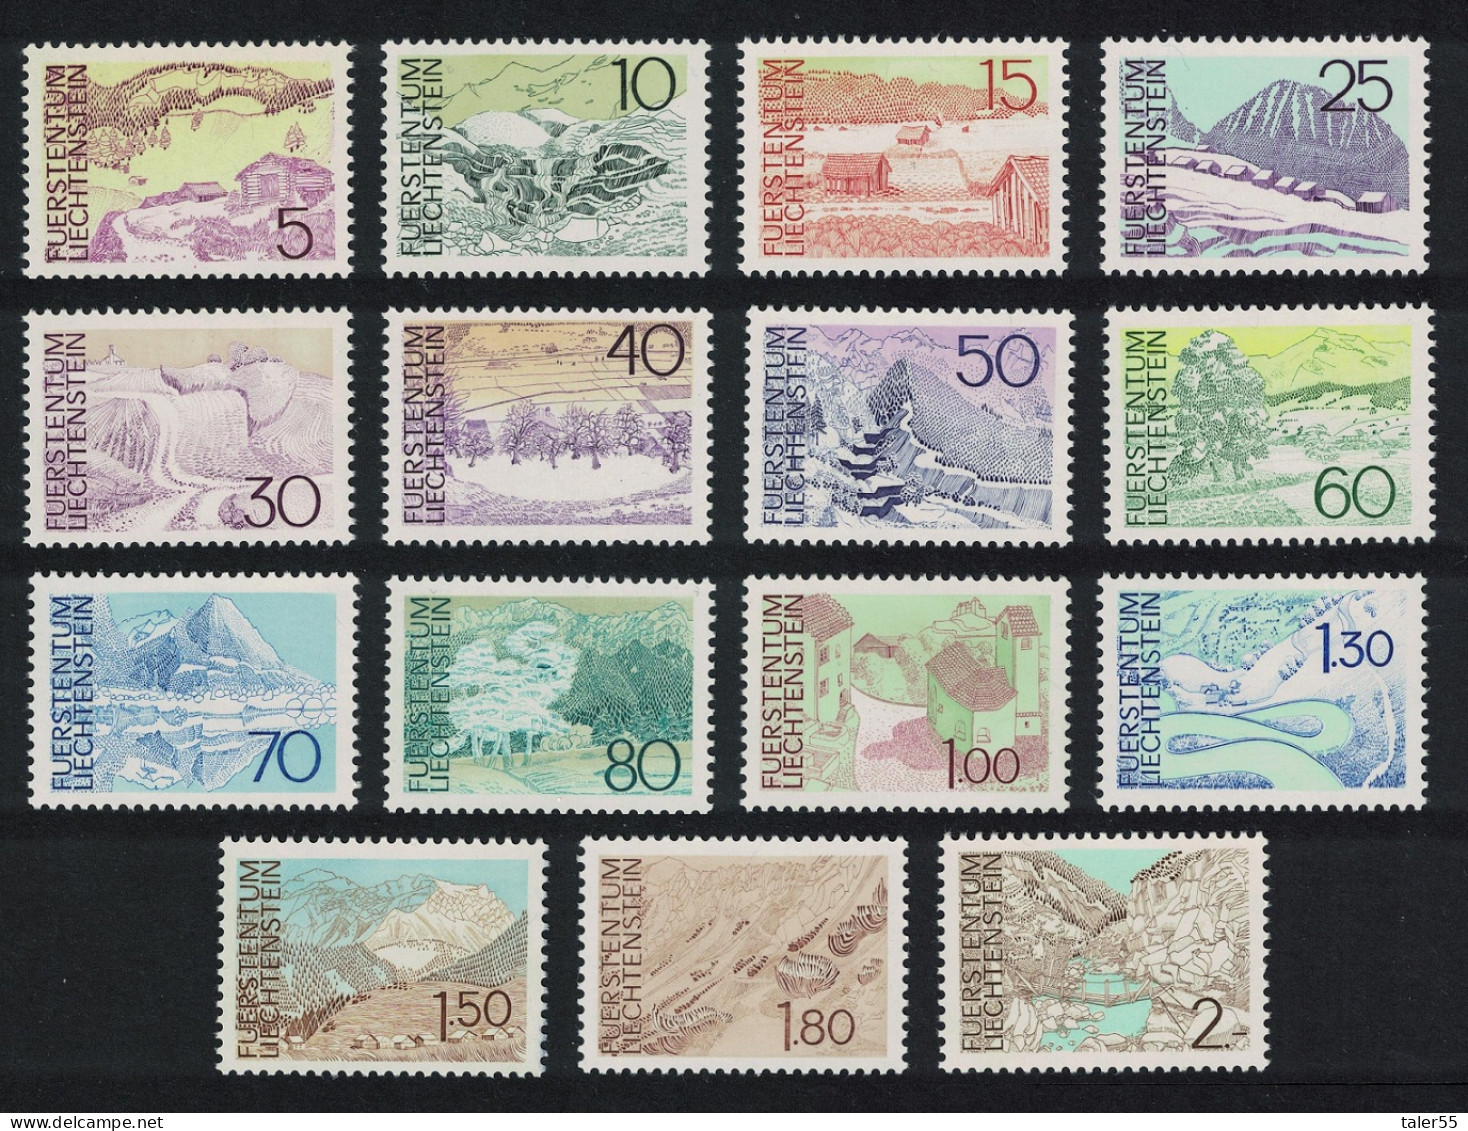 Liechtenstein Landscapes 15v COMPLETE 1972 MNH SG#561-575 - Unused Stamps